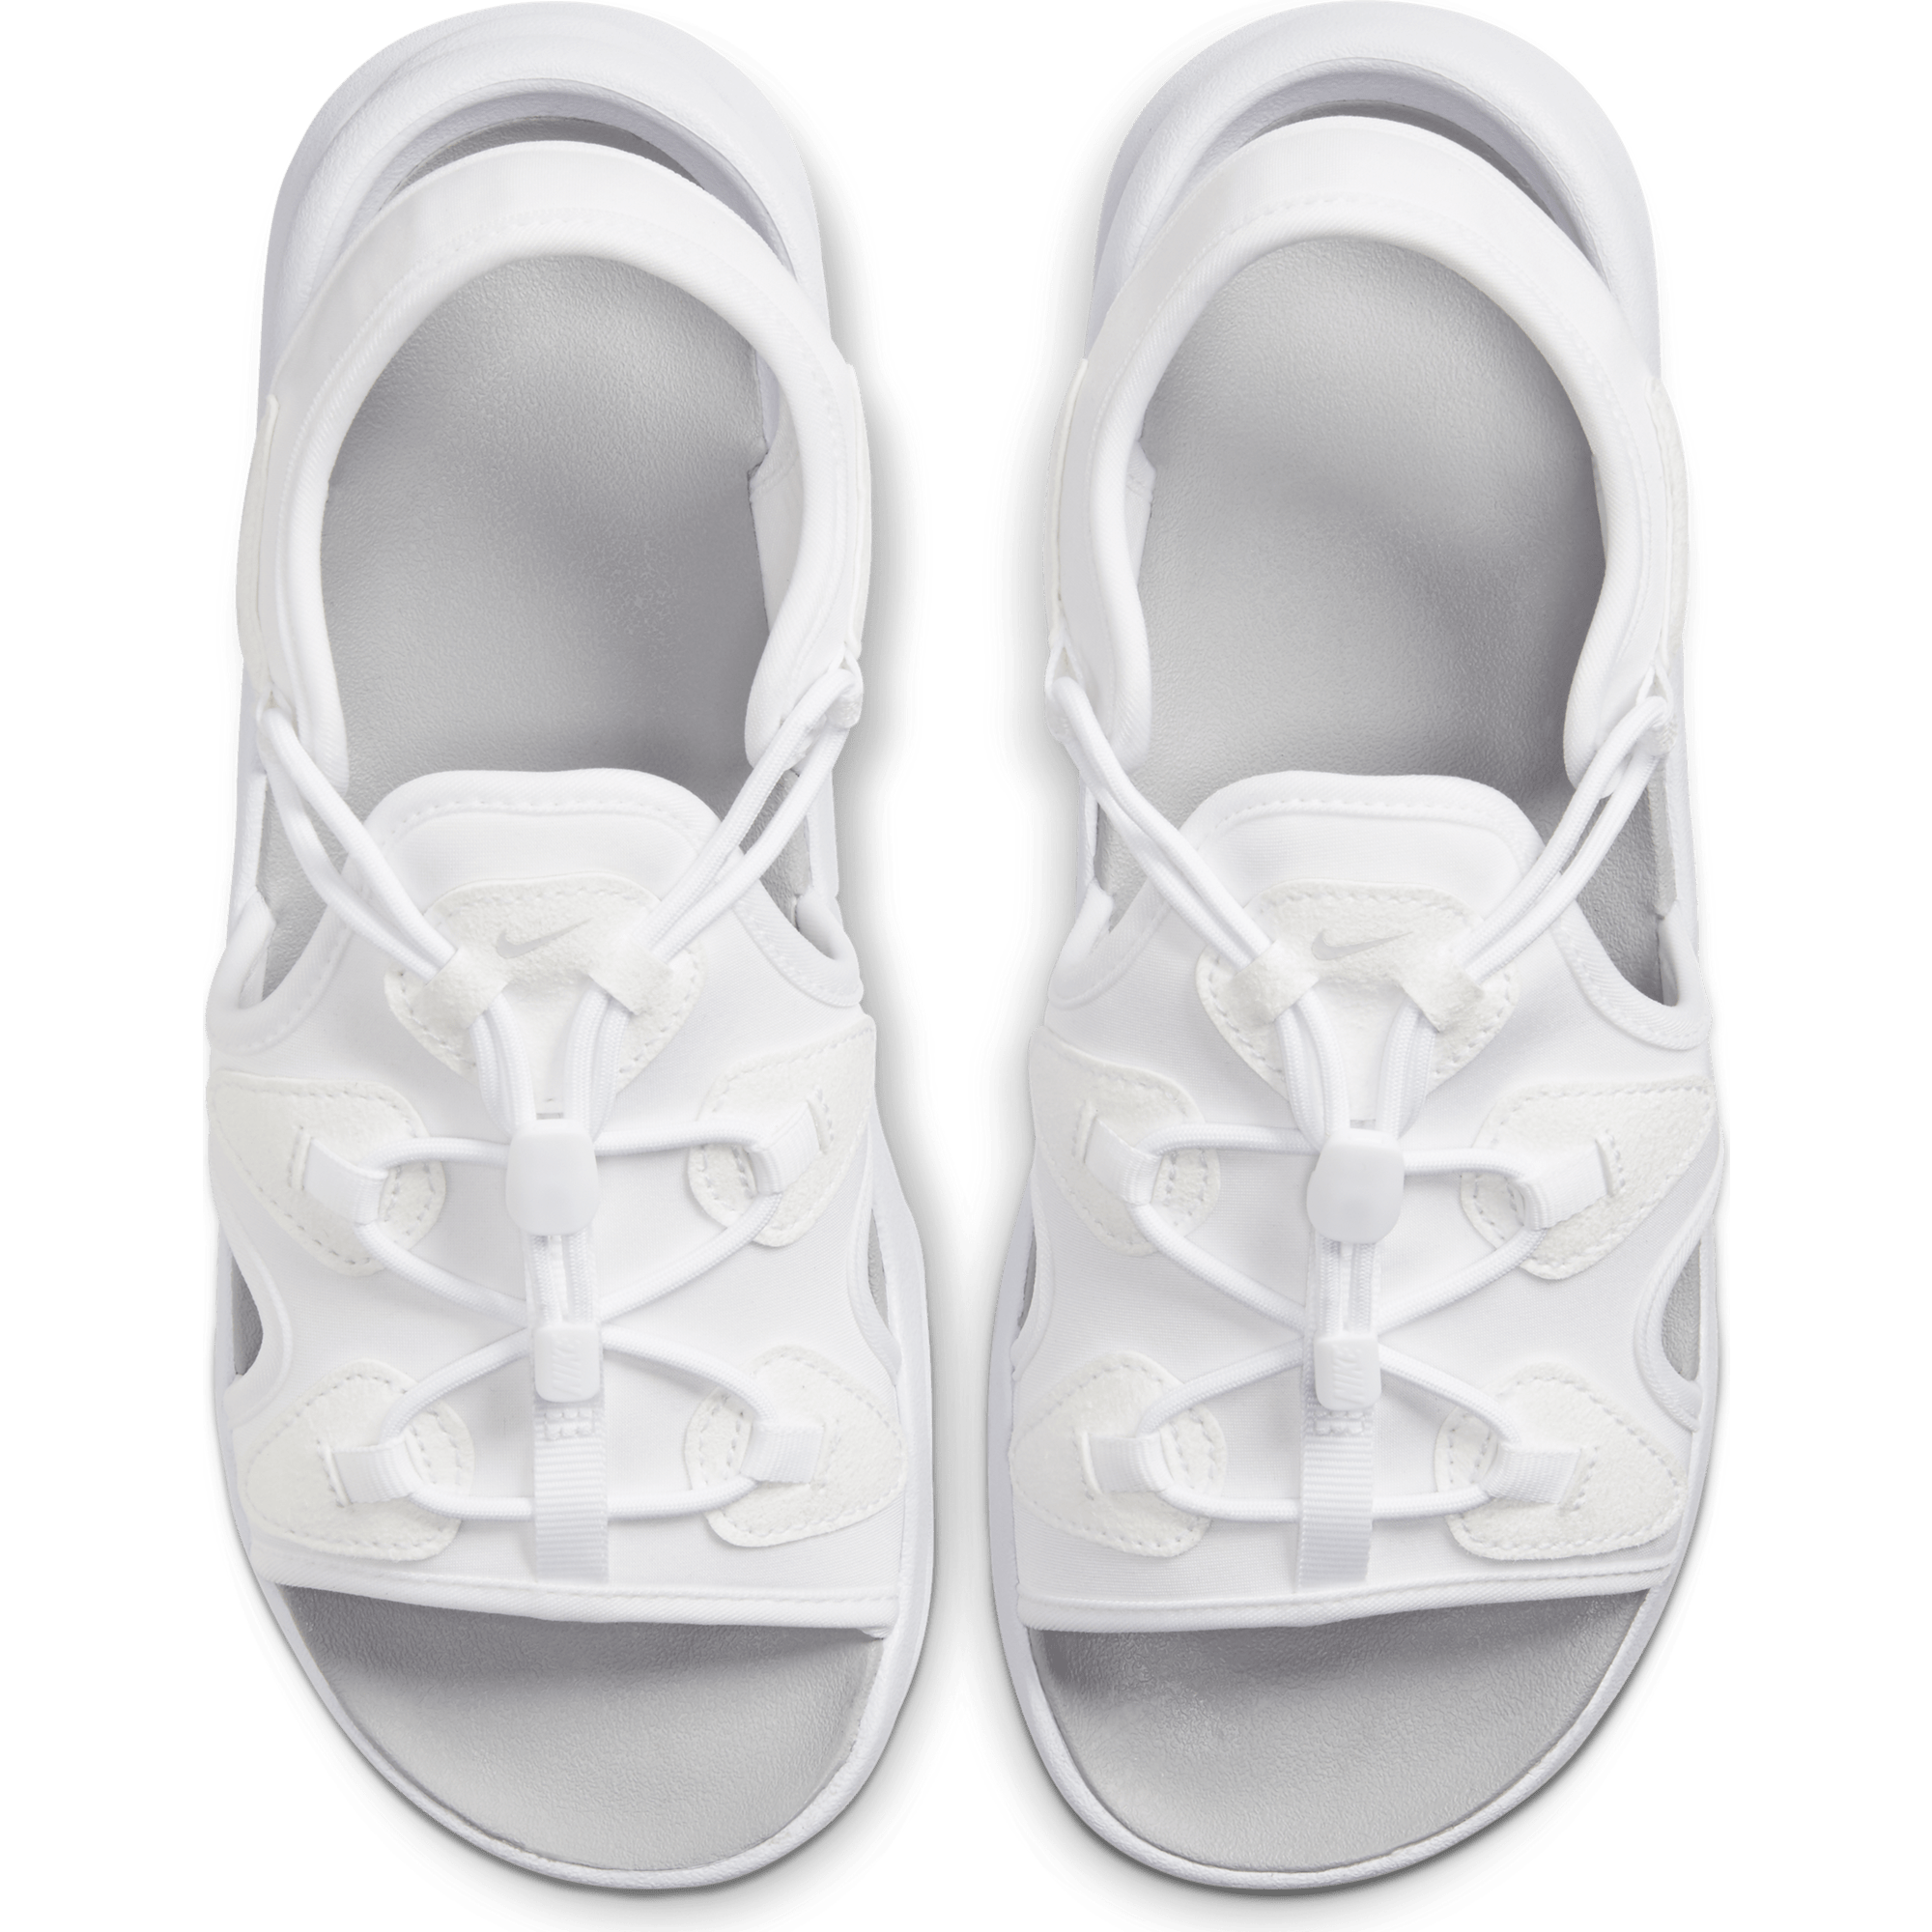 Nike Air Max Koko - Women's Sandal